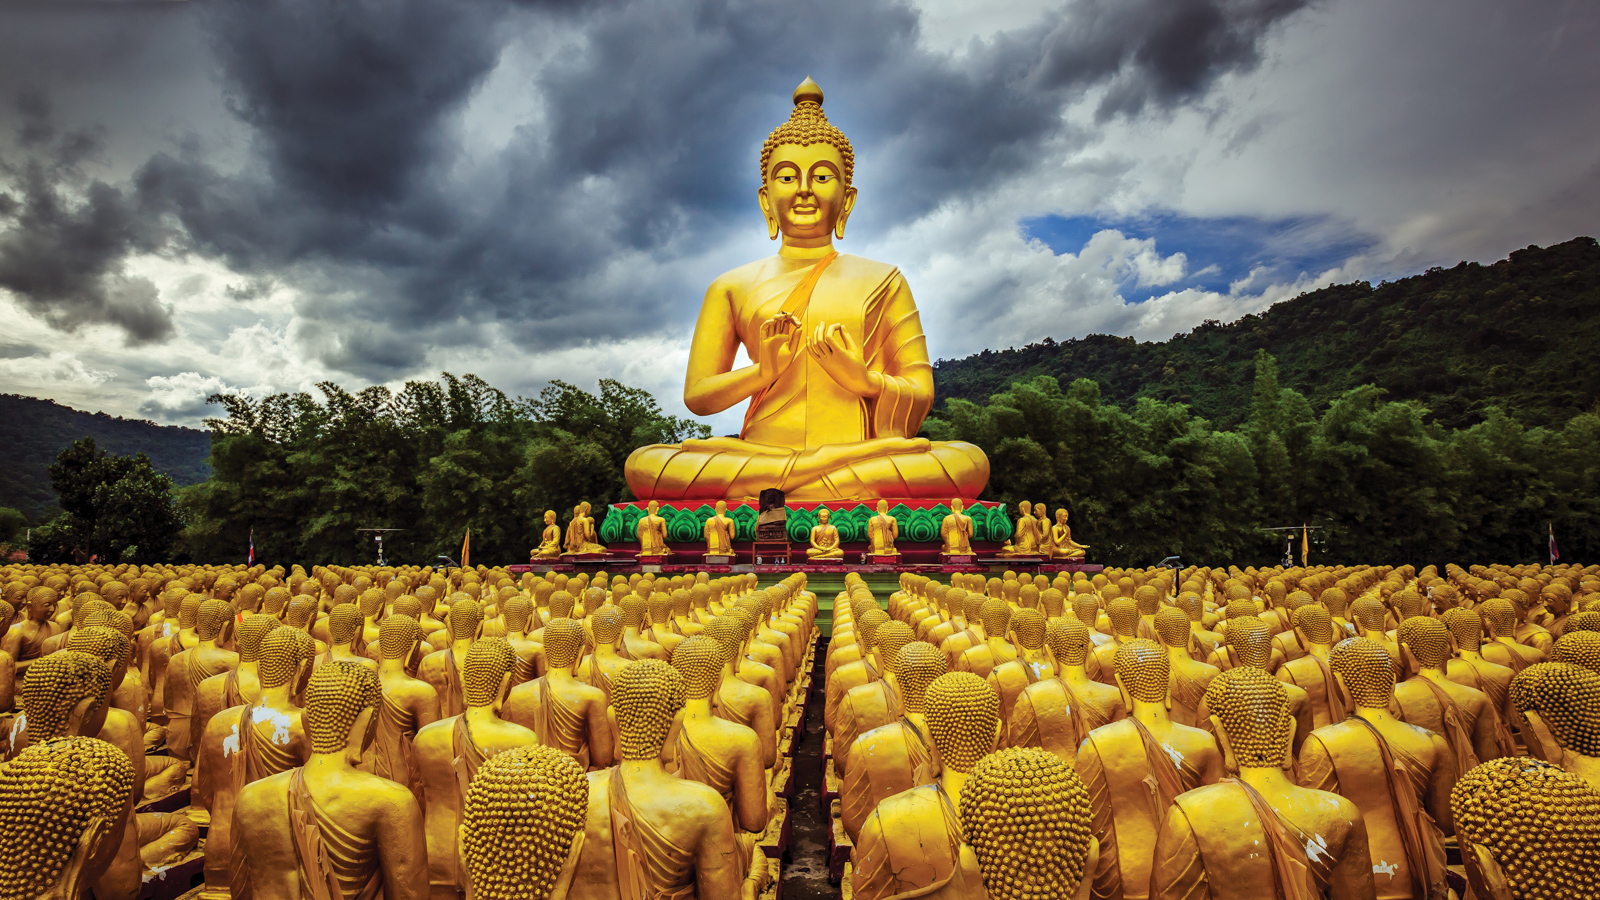 Tăng tộc là một trong bốn đường giáo của đạo Phật, đại diện cho môn đồ và những người tu hành của đạo Phật. Tăng tộc có ý nghĩa vô cùng quan trọng trong tôn giáo Phật giáo, đó là sự tập trung và sự kết nối giữa các đệ tử và đạo sư. Hãy khám phá ý nghĩa của Tăng tộc và hiểu rõ hơn về đạo Phật.